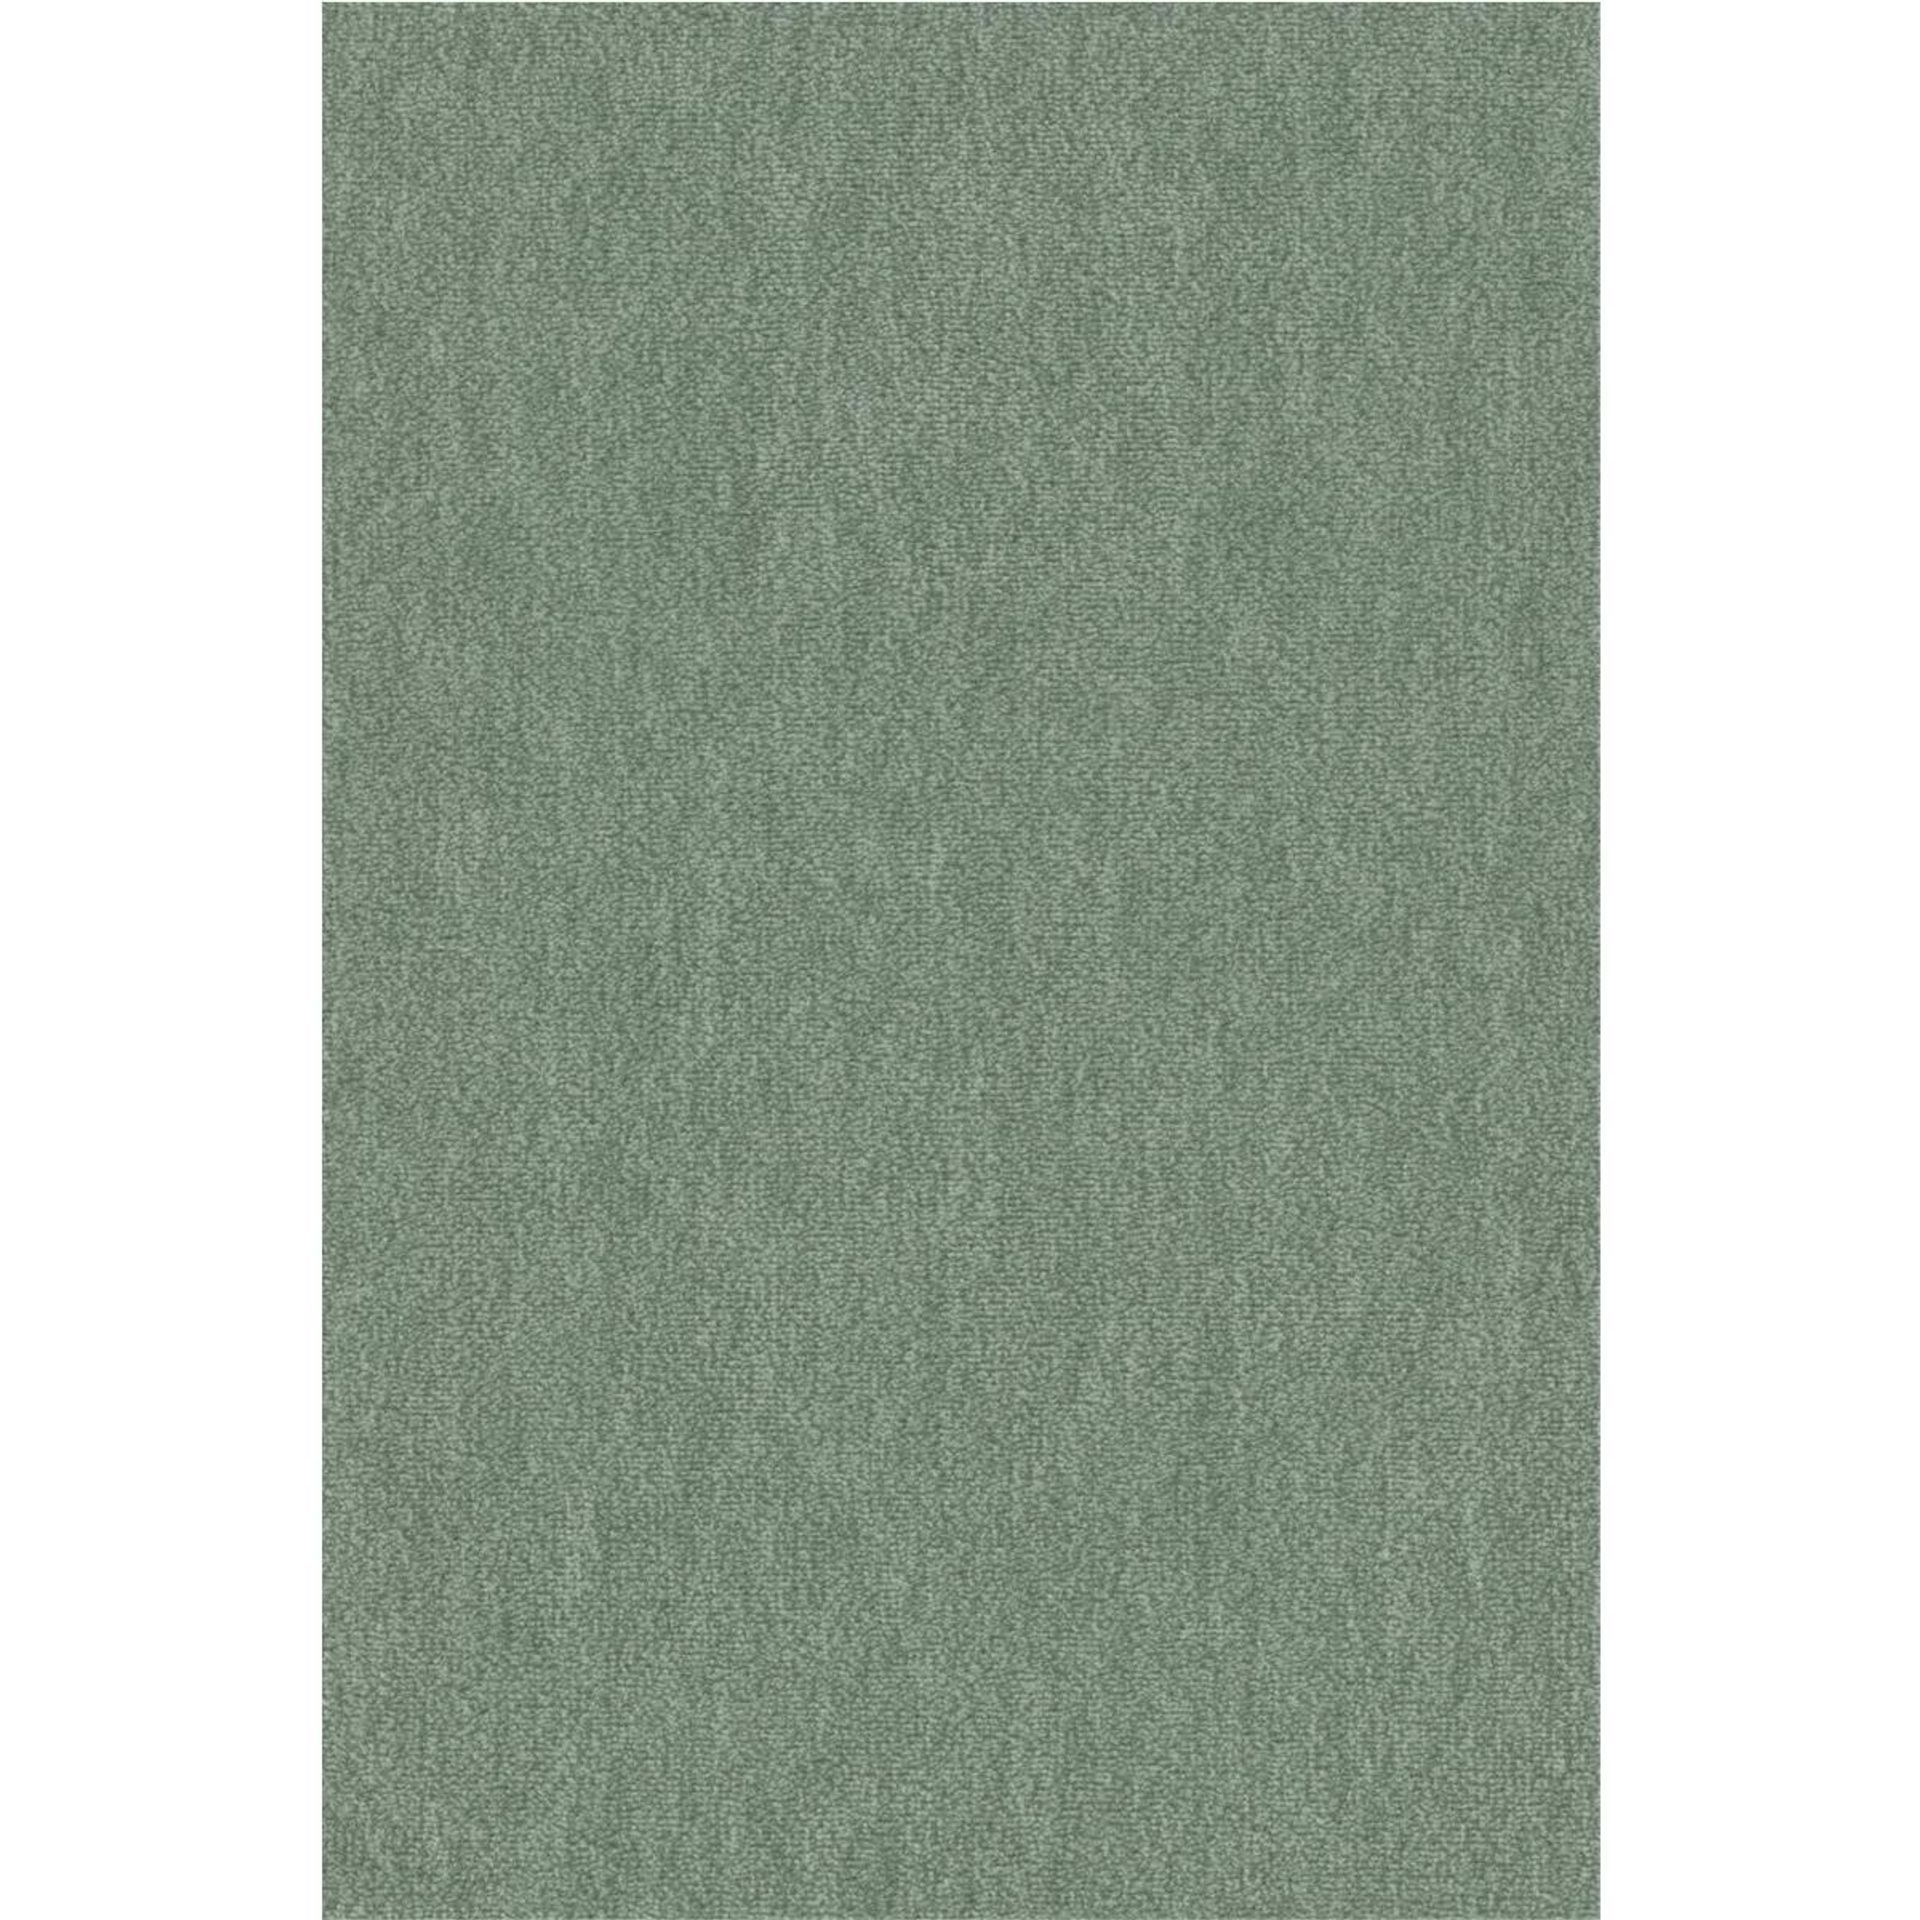 Teppichboden Vorwerk Passion 1002 NUTRIA MELANGE Velours Grün 4H08 - Rollenbreite 500 cm